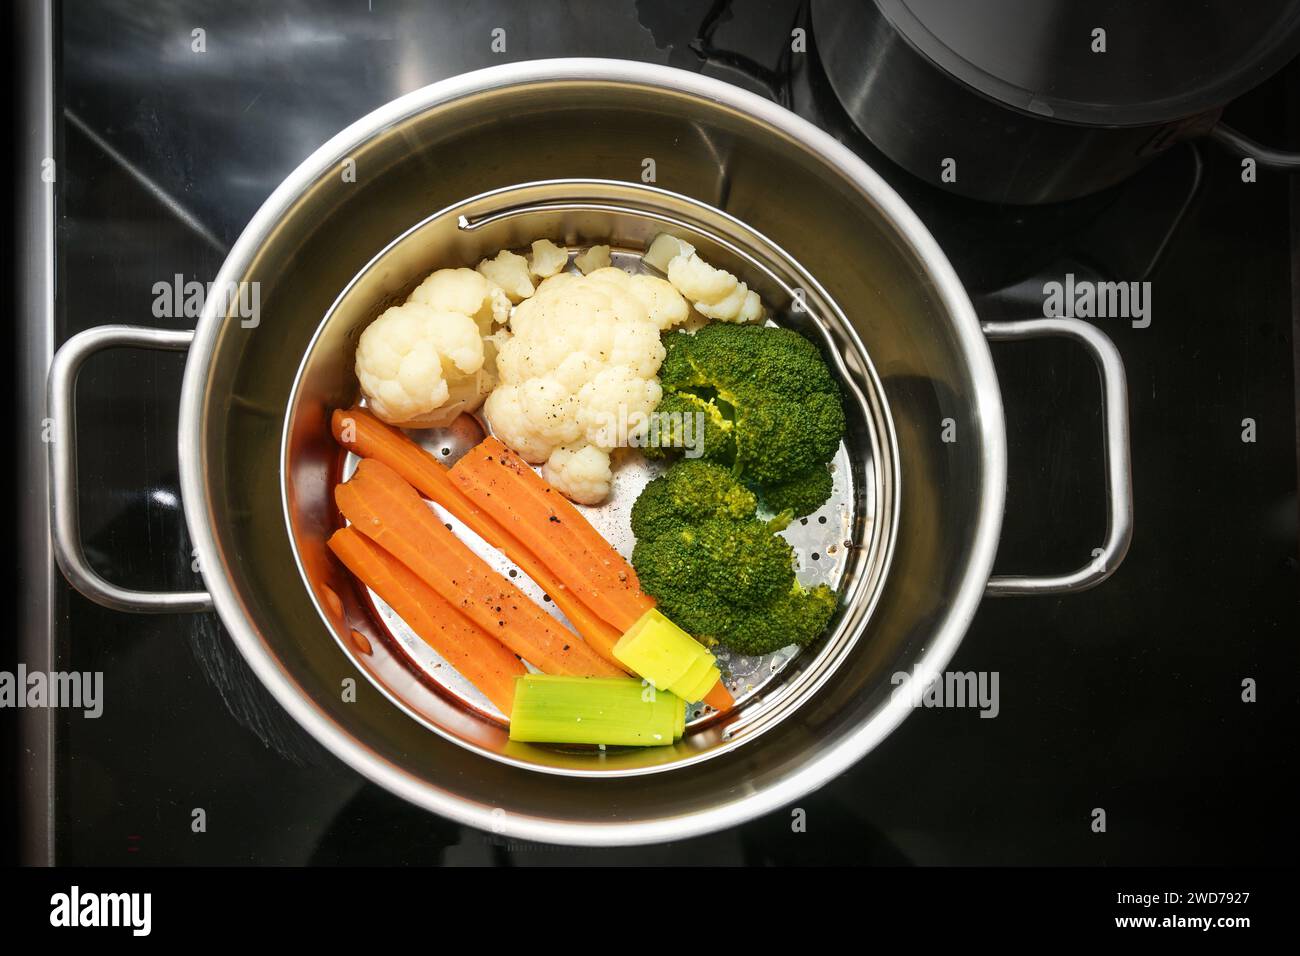 Mezcla de verduras en una cesta de vapor de alimentos en una olla de acero inoxidable, la técnica de cocina saludable que preserva los minerales, vitaminas y sabor, vista superior de Foto de stock